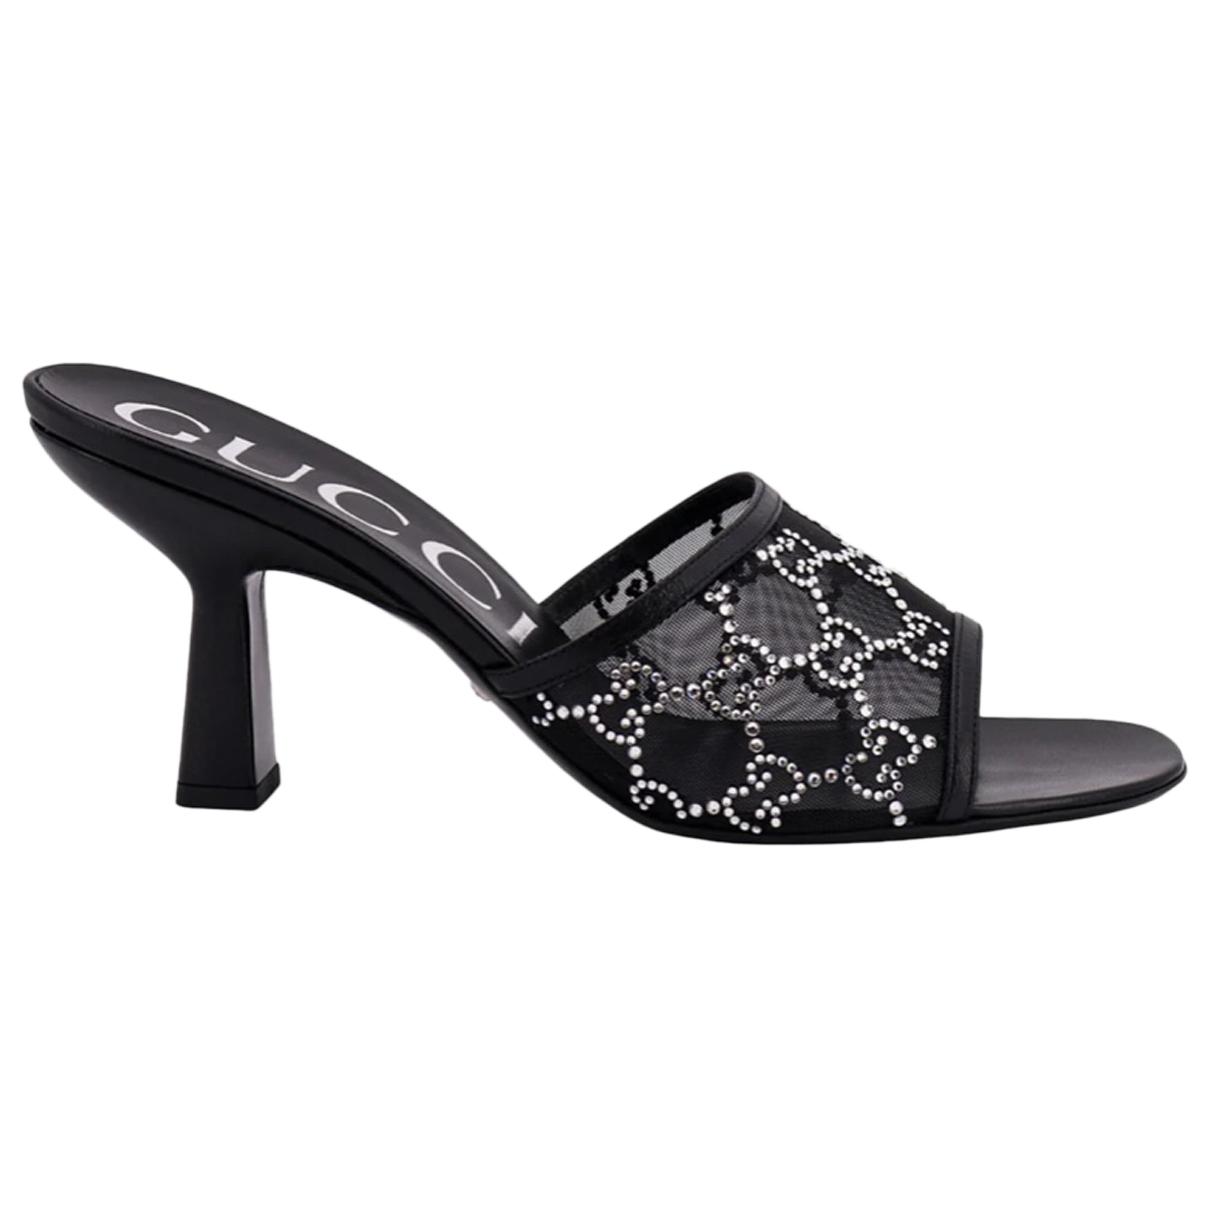 Leather heels - 1